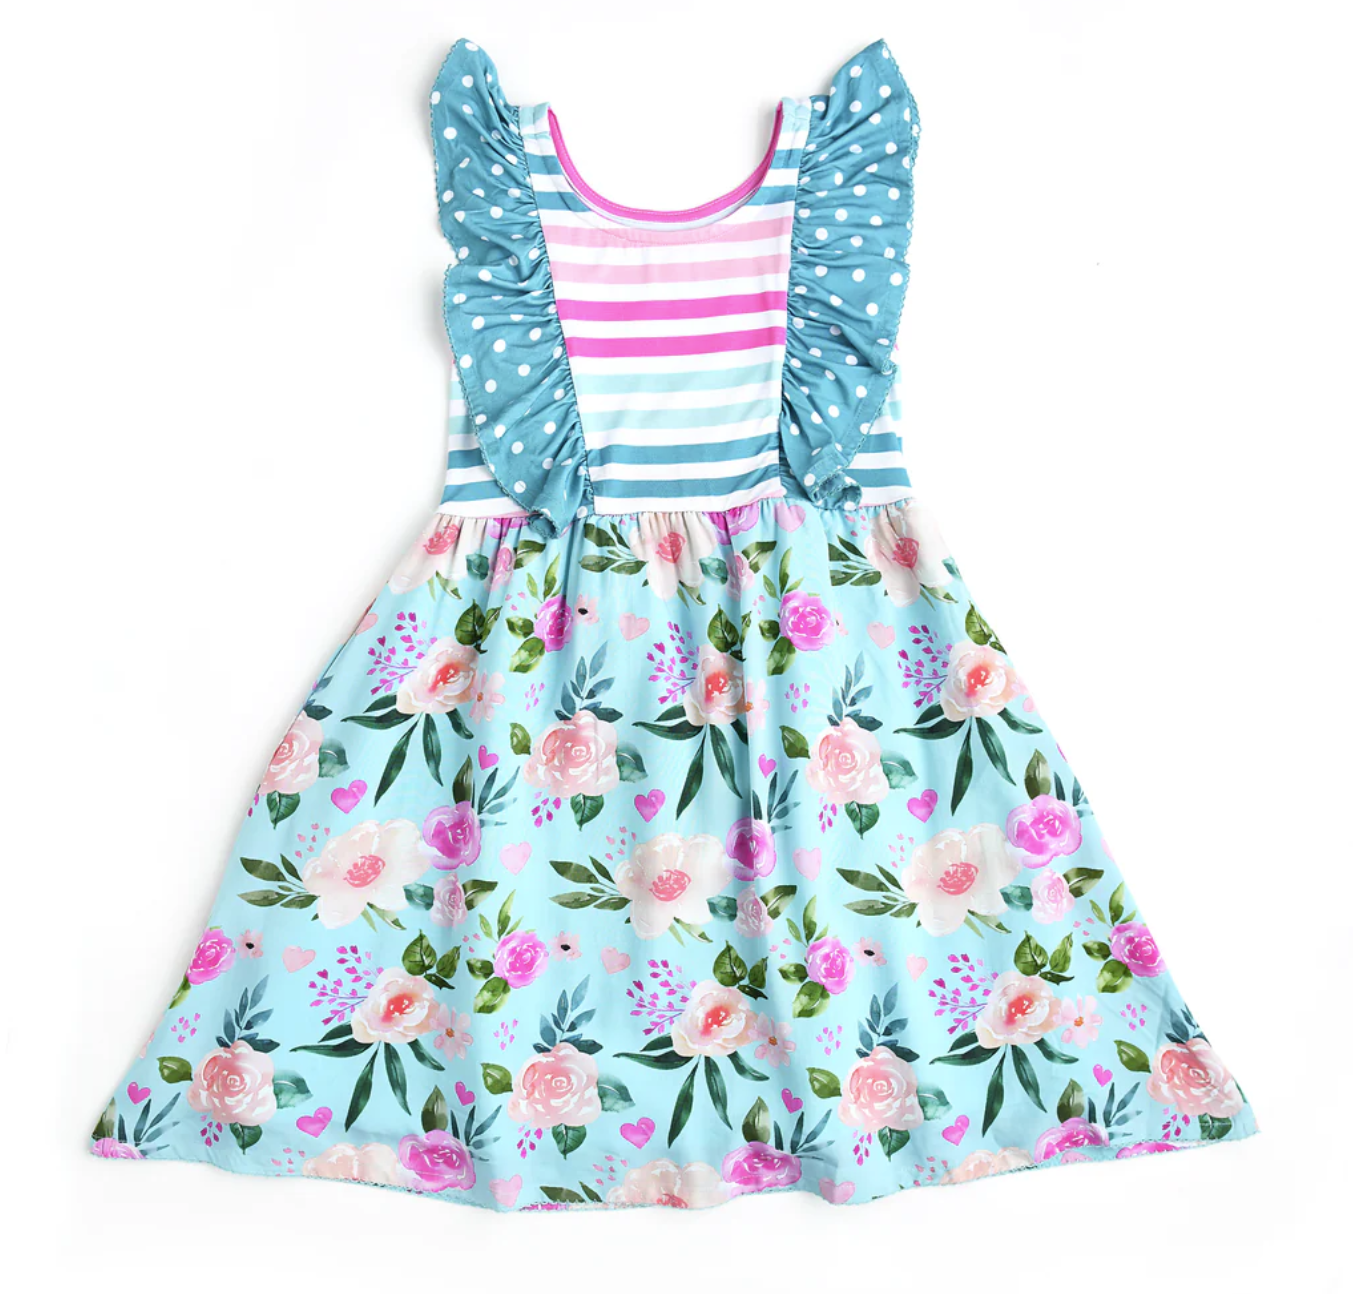 Baby Lace Ruffle Cotton Dress,ruffle strap midi dress